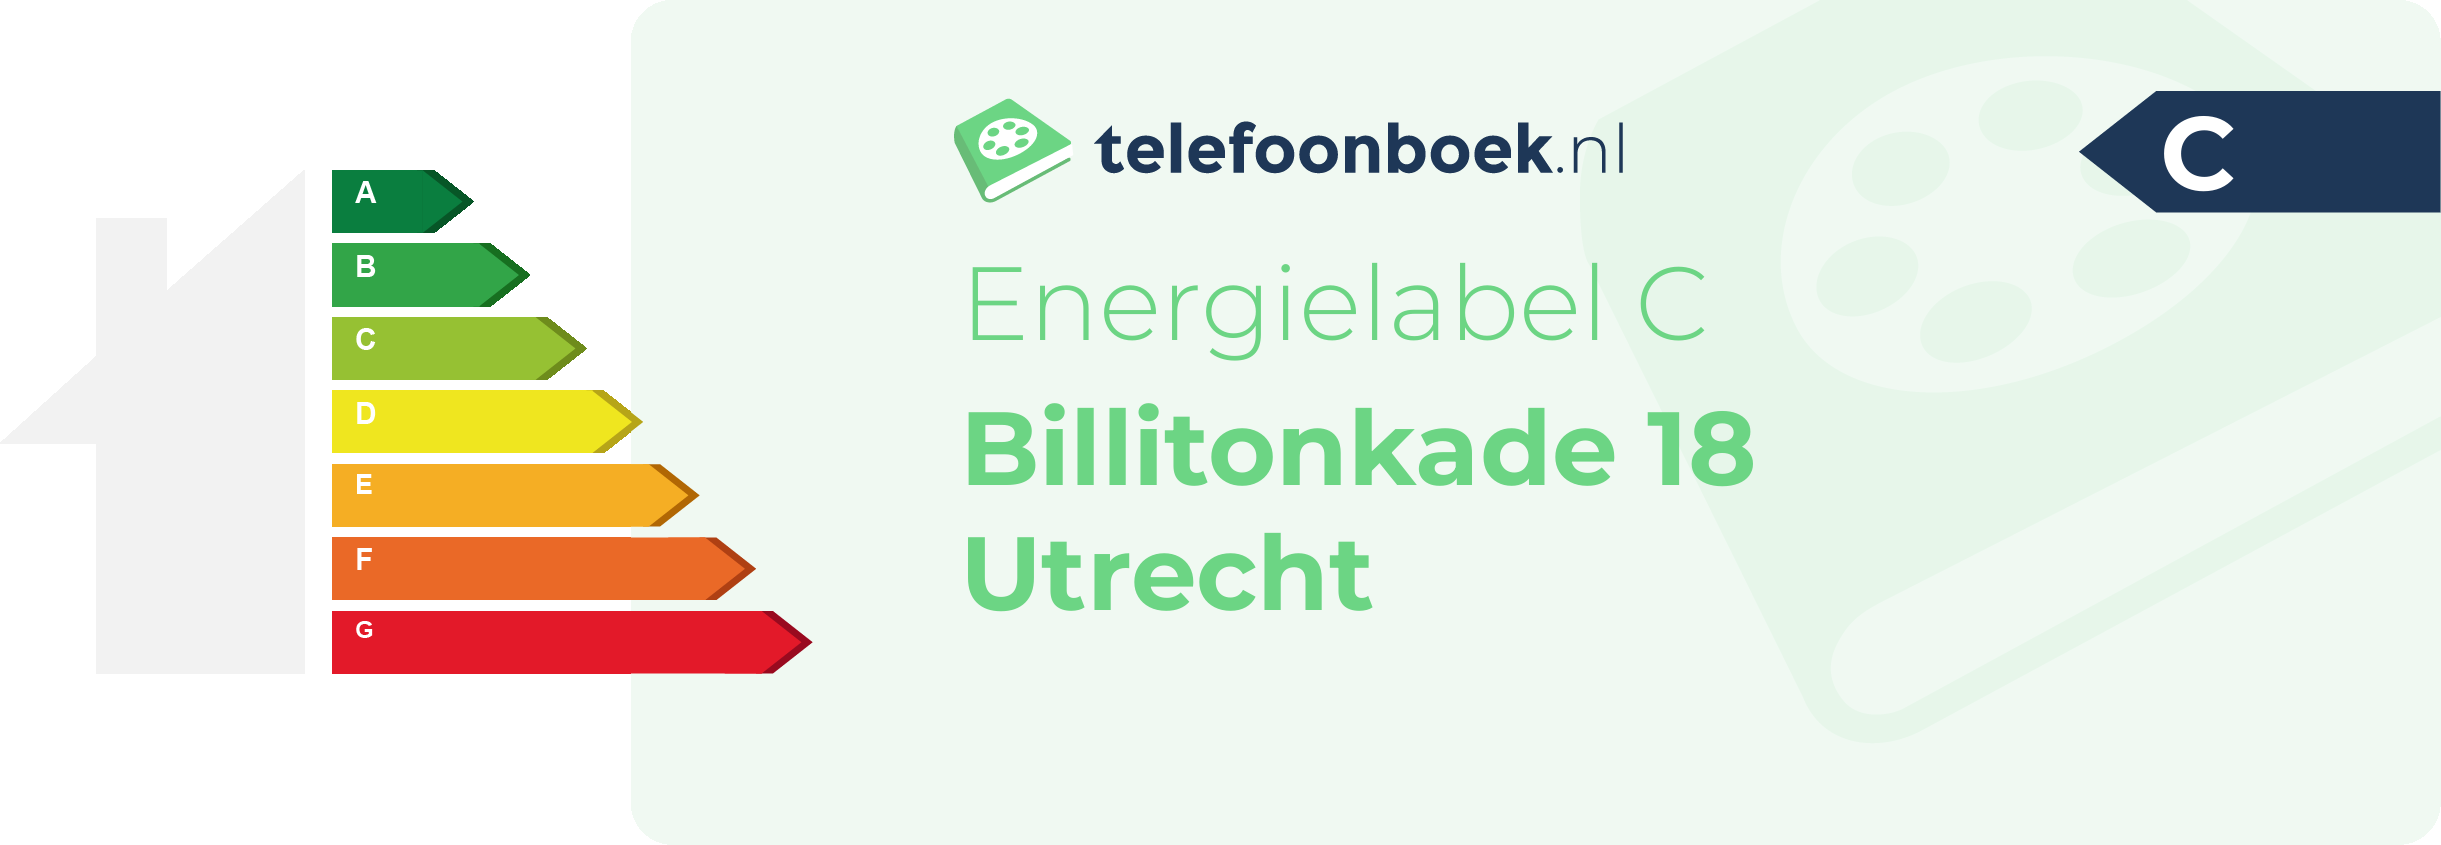 Energielabel Billitonkade 18 Utrecht